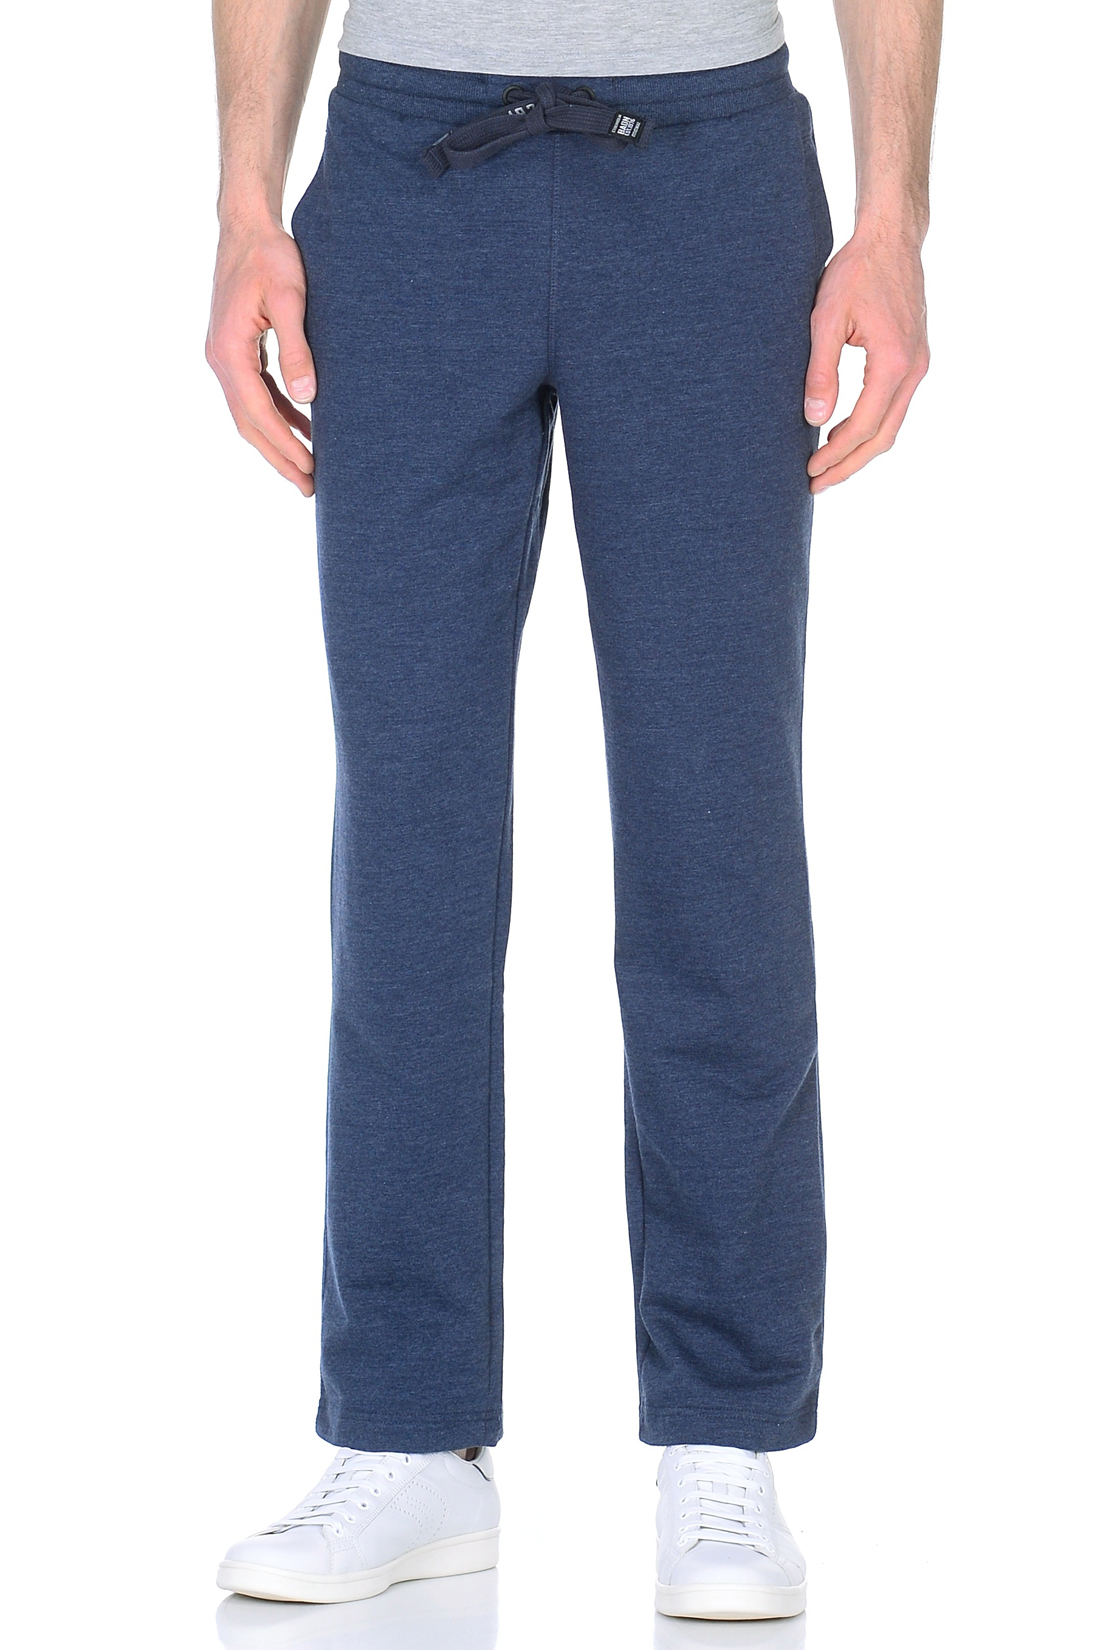 Спортивные брюки (арт. baon B798019), размер XXL, цвет blue night melange#синий Спортивные брюки (арт. baon B798019) - фото 1